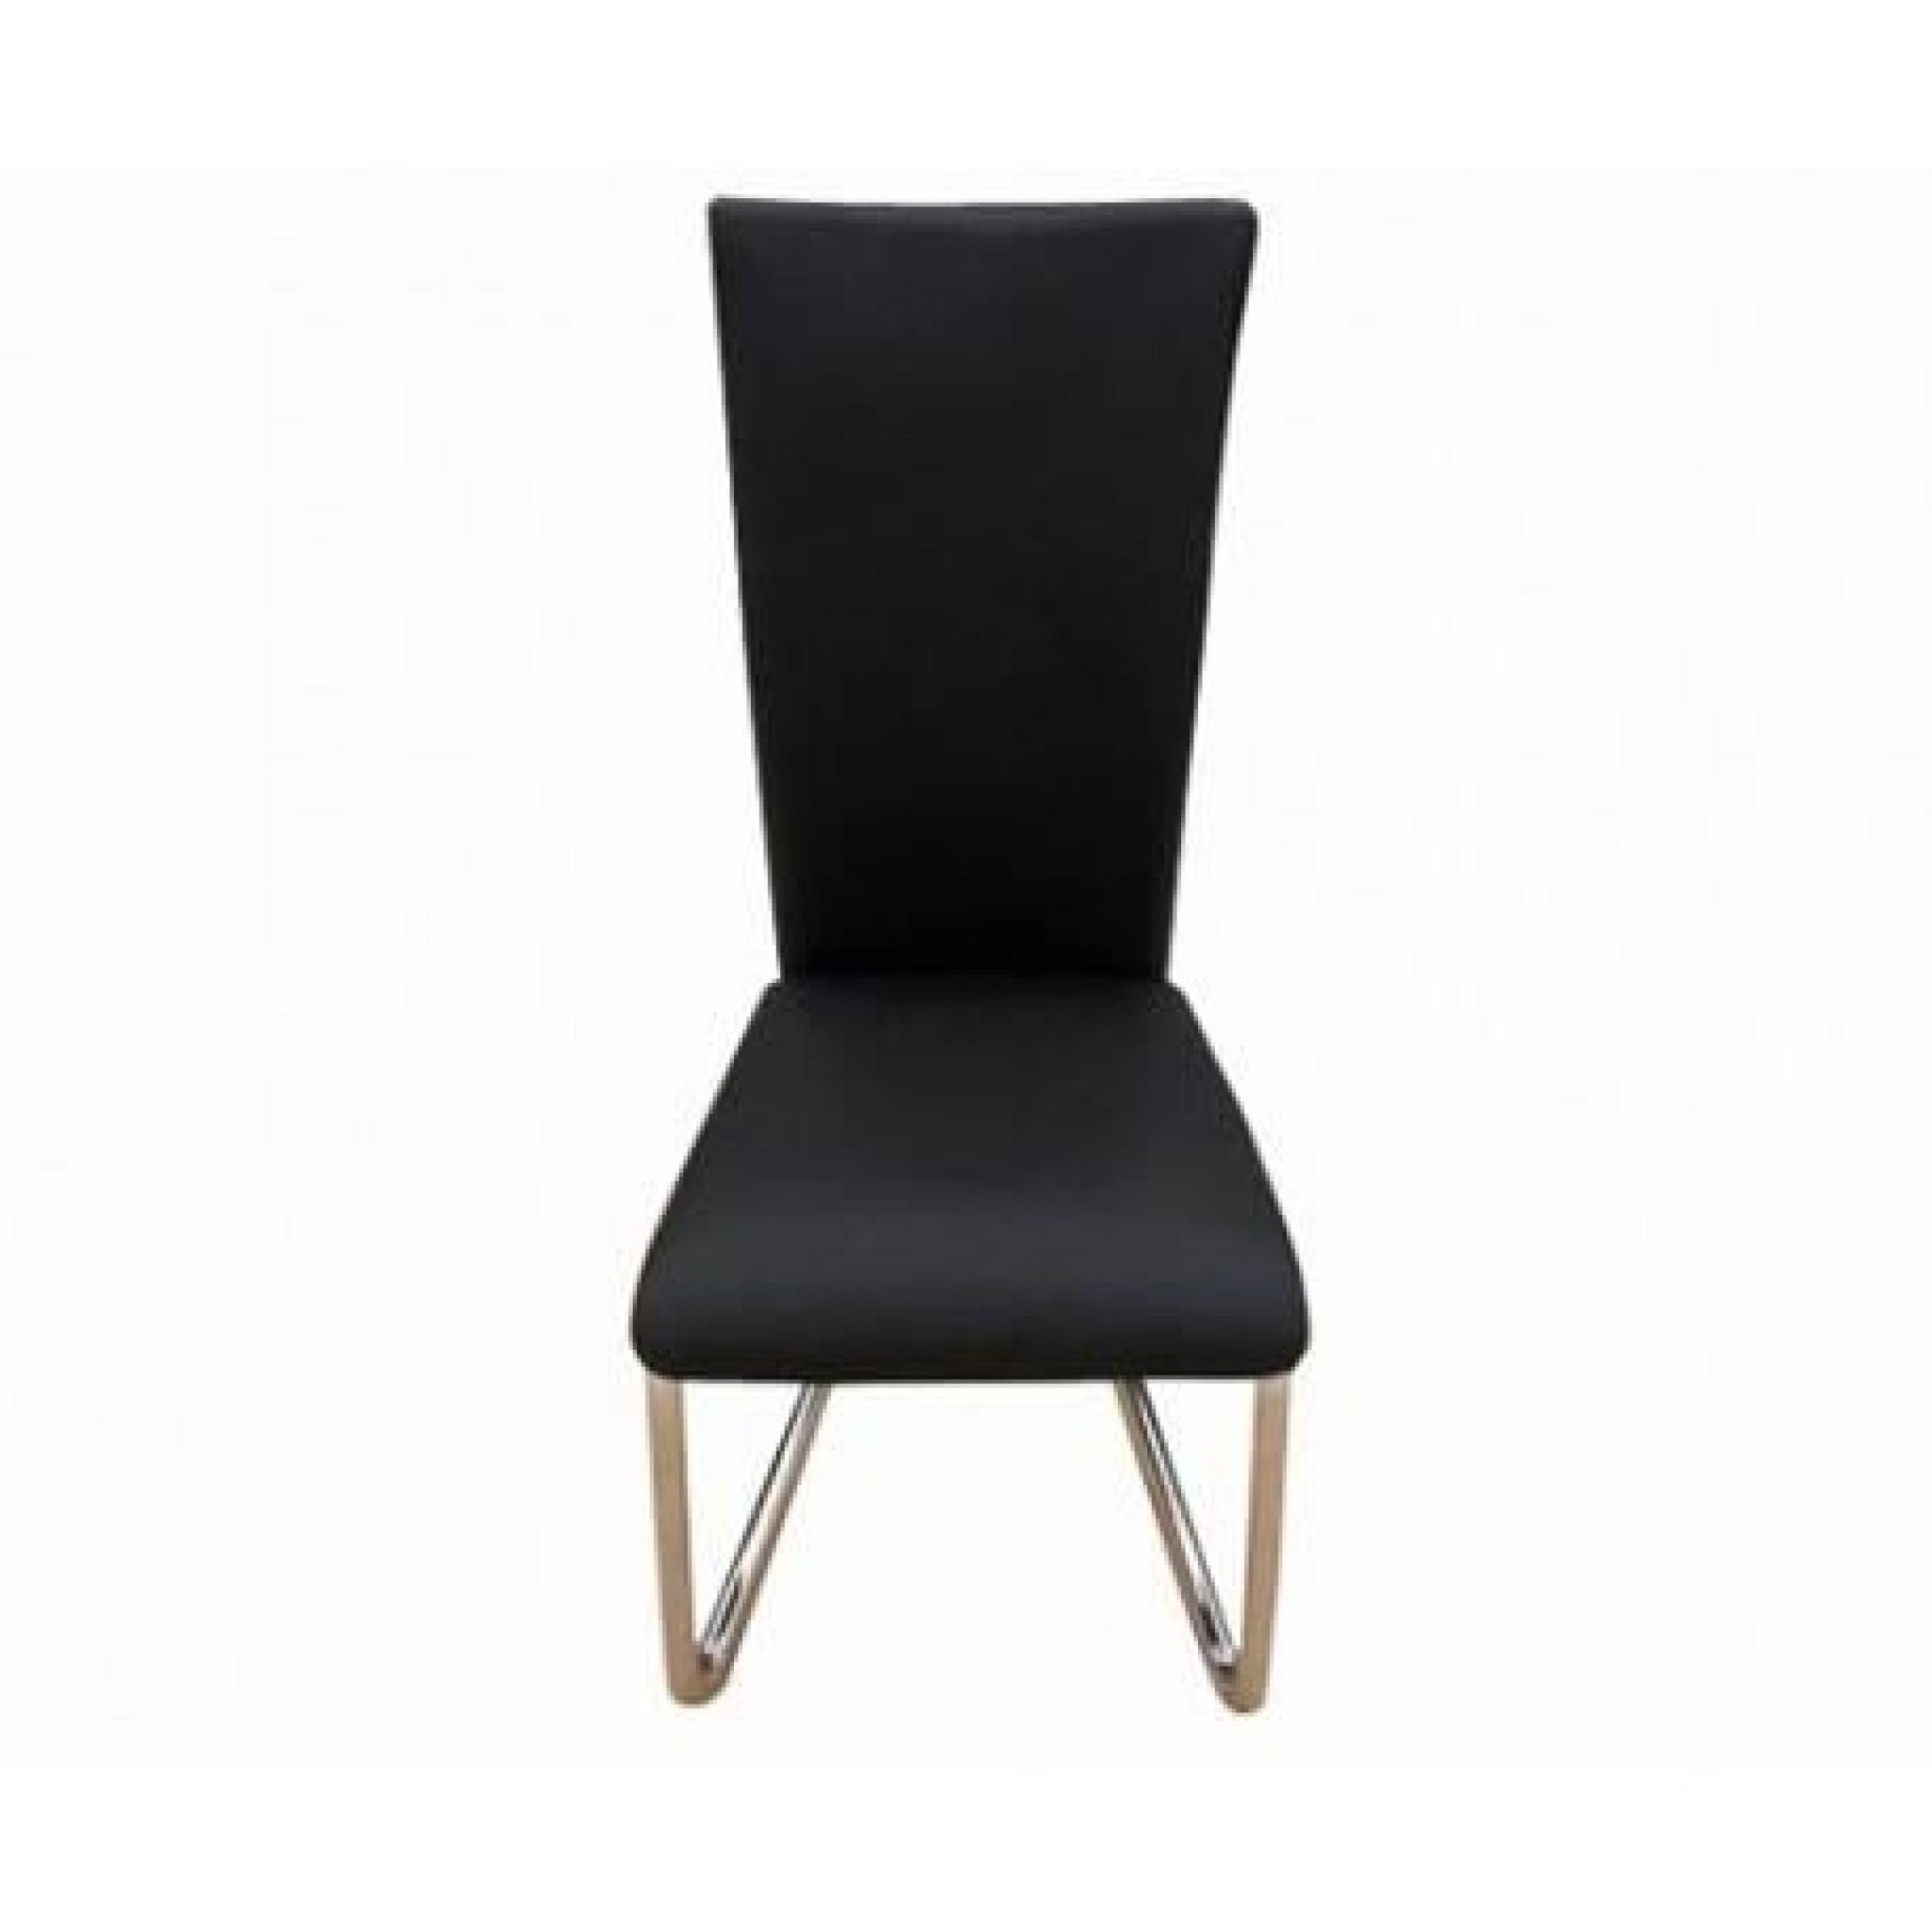 6 Chaises en métal design (Noir) Maja+ pas cher